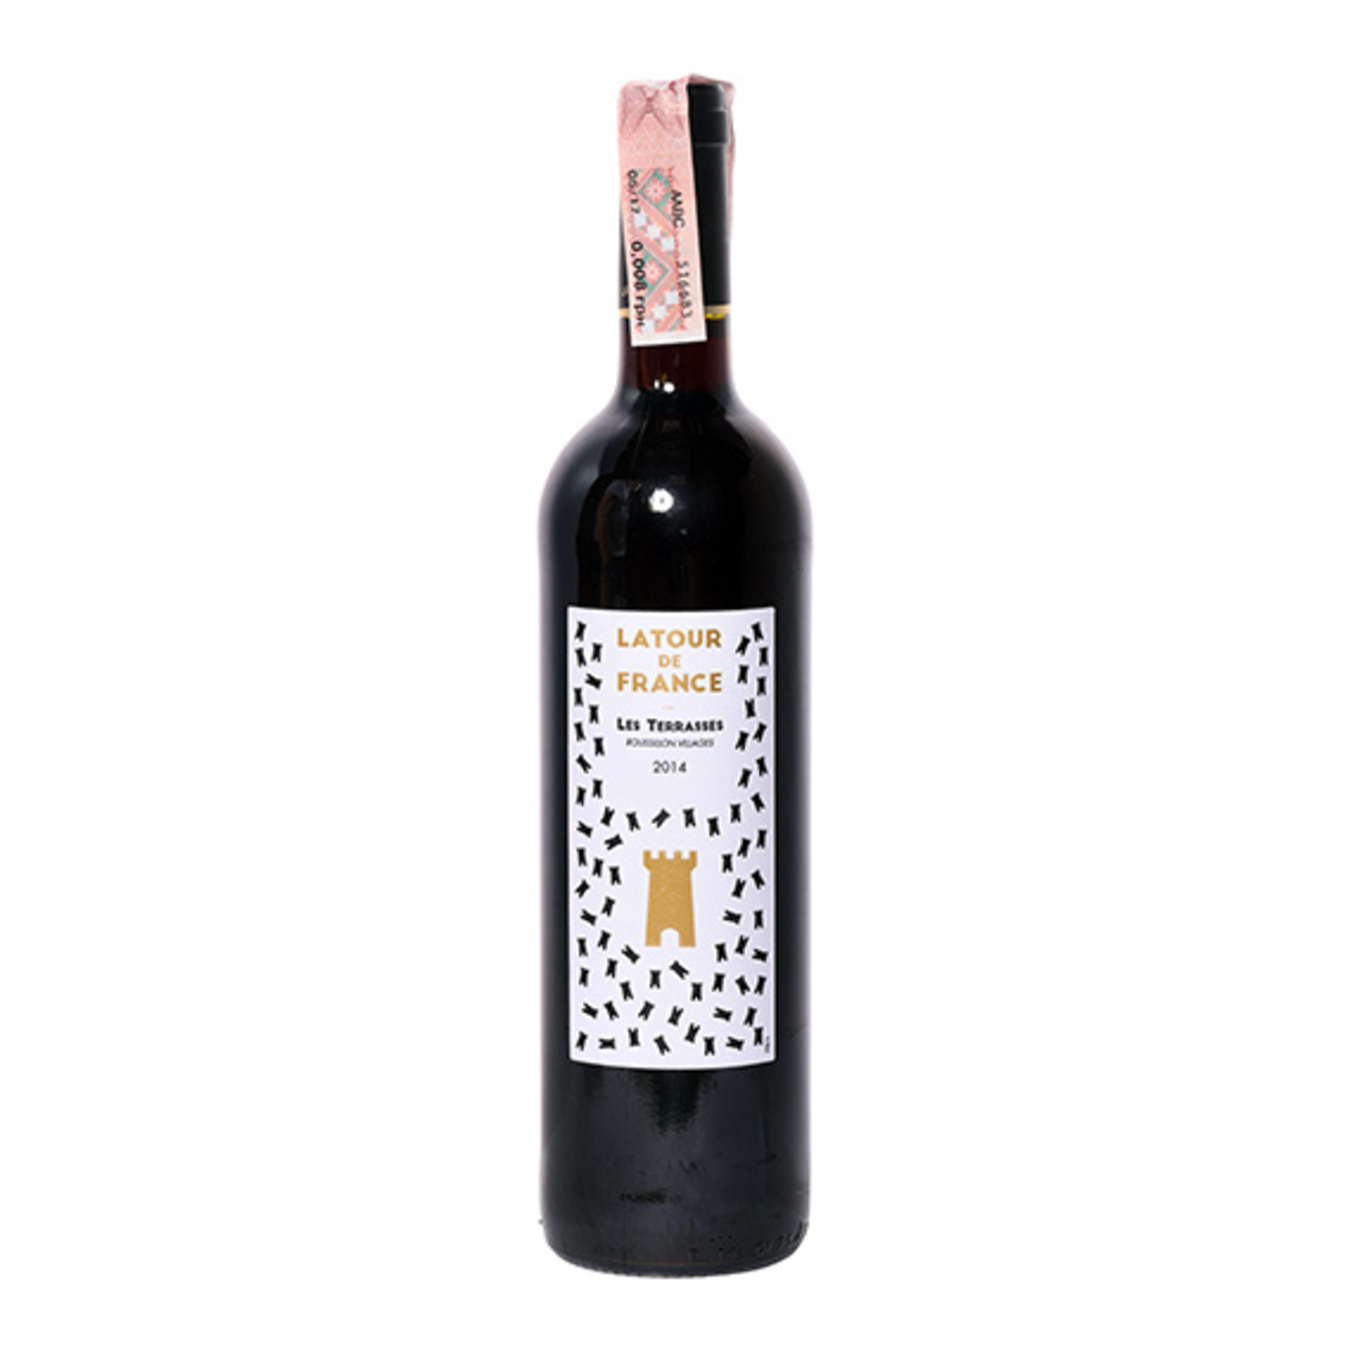 Вино Latour de France Les Terrasses Cotes du Roussillon Villages червоне сухе 14,5% 0,75л